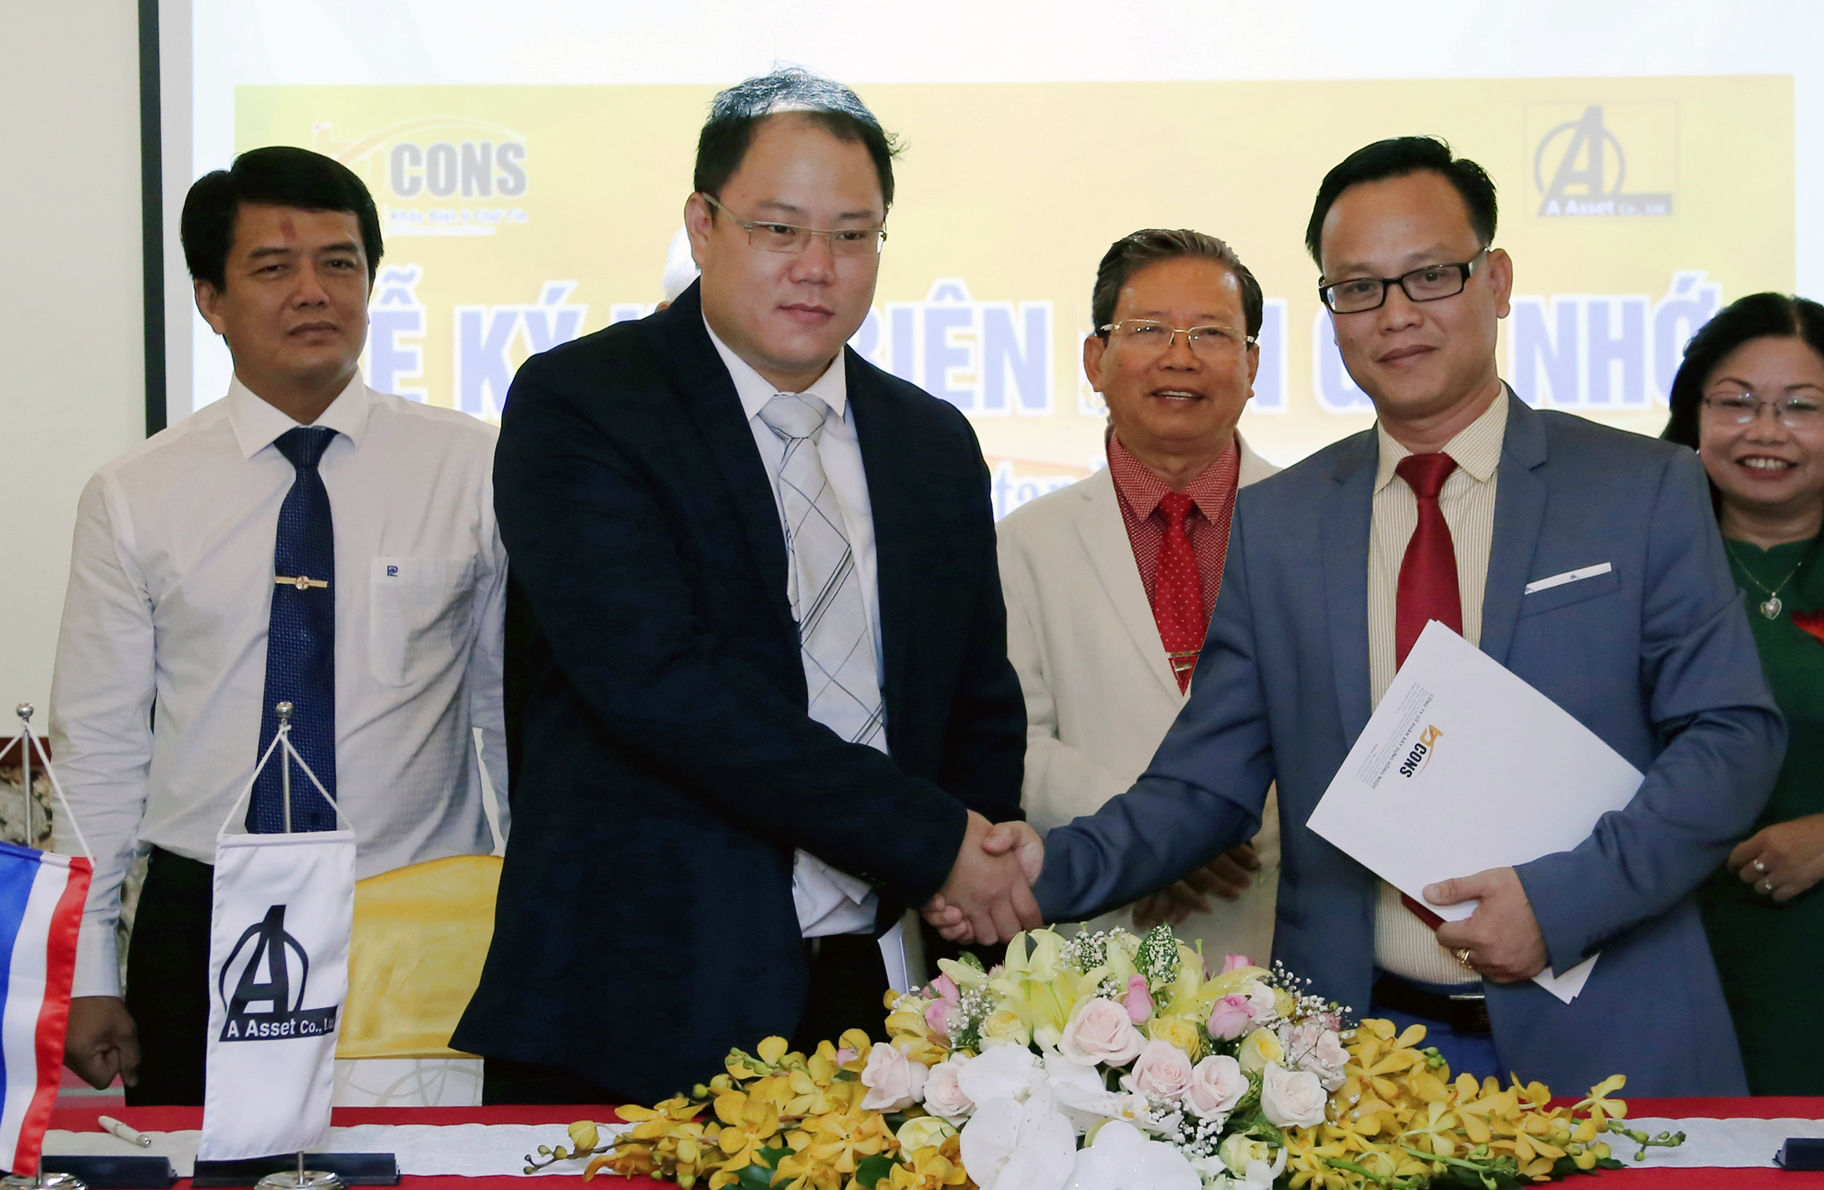 PPSN Co., Ltd. là một trong những công ty hàng đầu về dịch vụ tư vấn và kỹ thuật xây dựng của Thái Lan được thành lập năm 1989. 